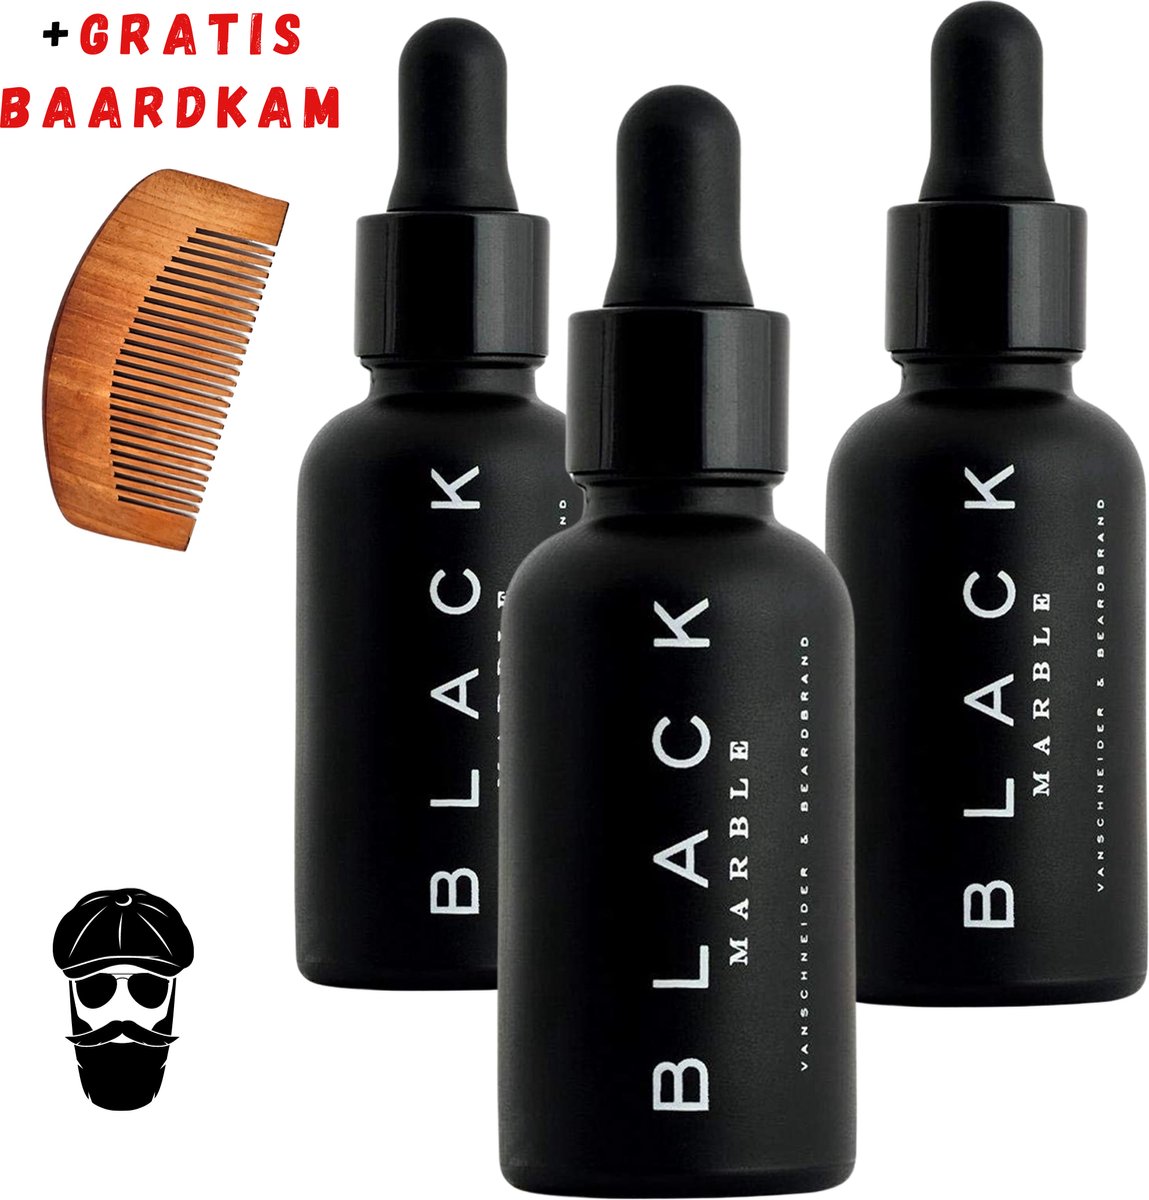 Black Marble Baardolie 3x30ml + Gratis Baardkam - Baard olie - Baardverzorging - Beard oil - Baardgroei - Haarserum